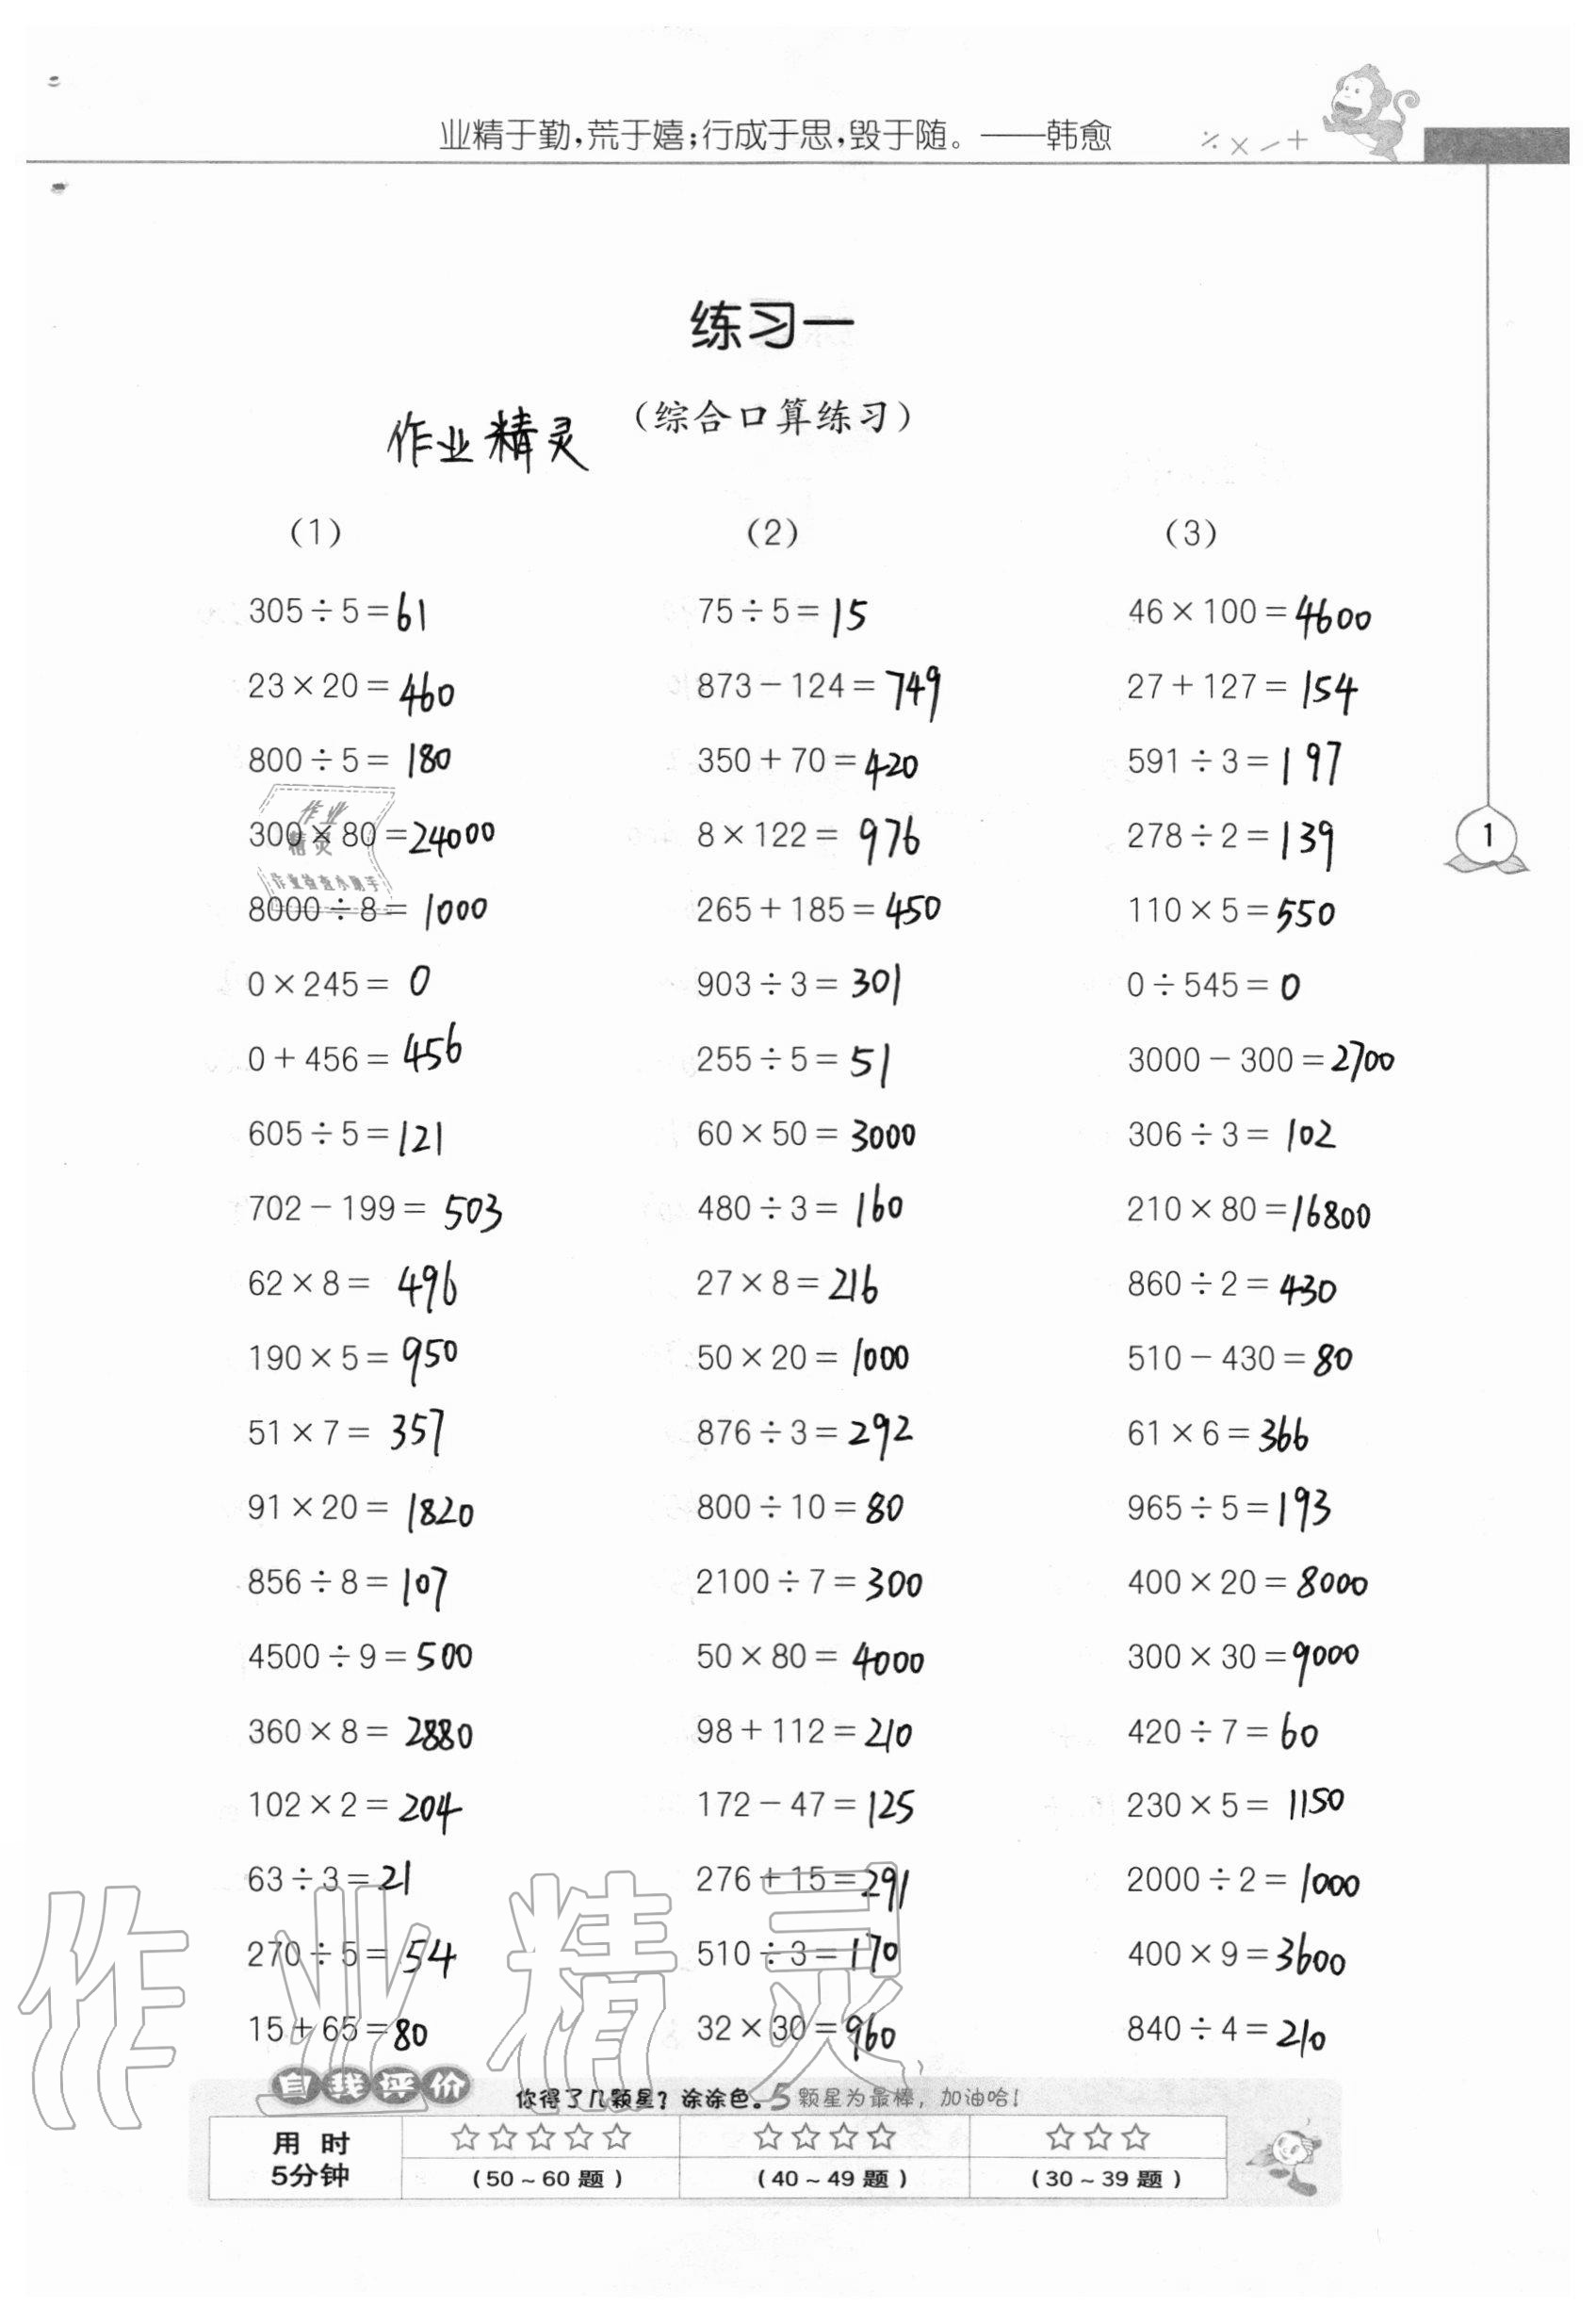 2020年小学数学口算心算速算天天练江苏人民出版社四年级数学上册北京